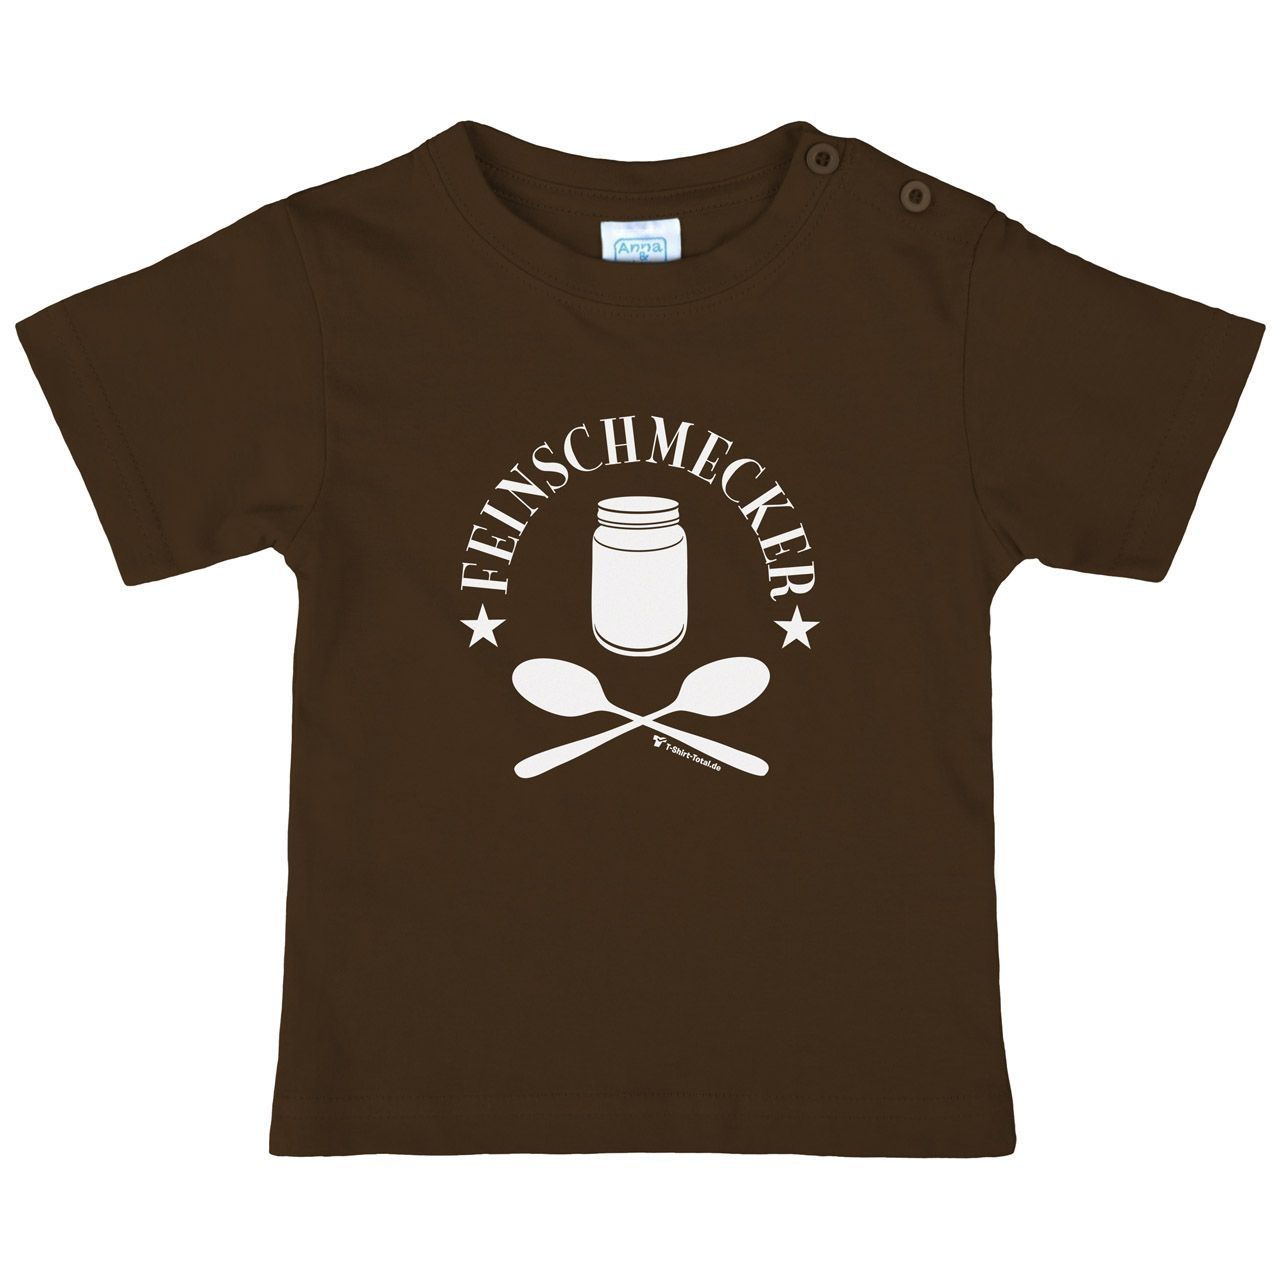 Feinschmecker Kinder T-Shirt braun 56 / 62